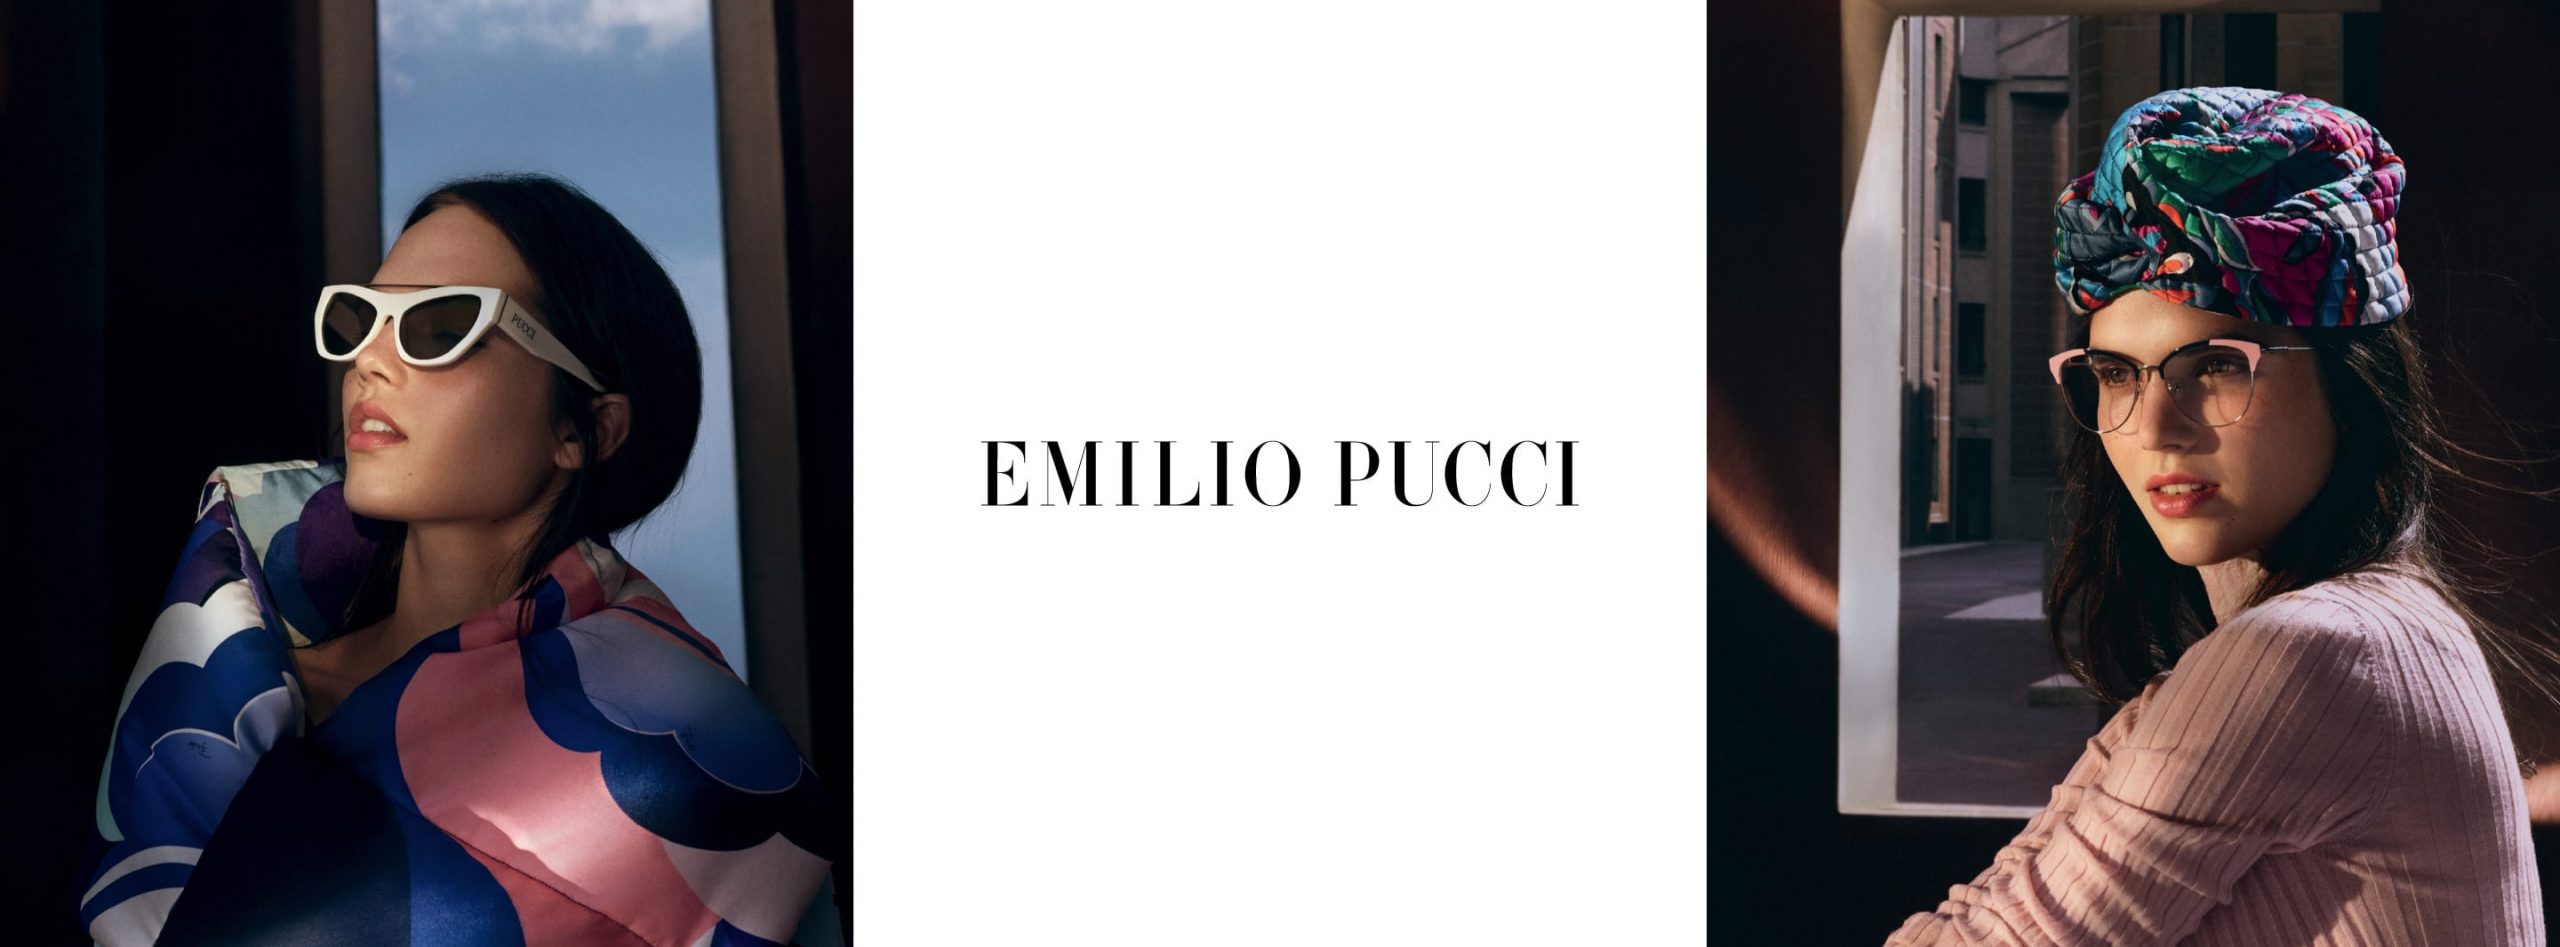 Emilio Pucci Biograhpy